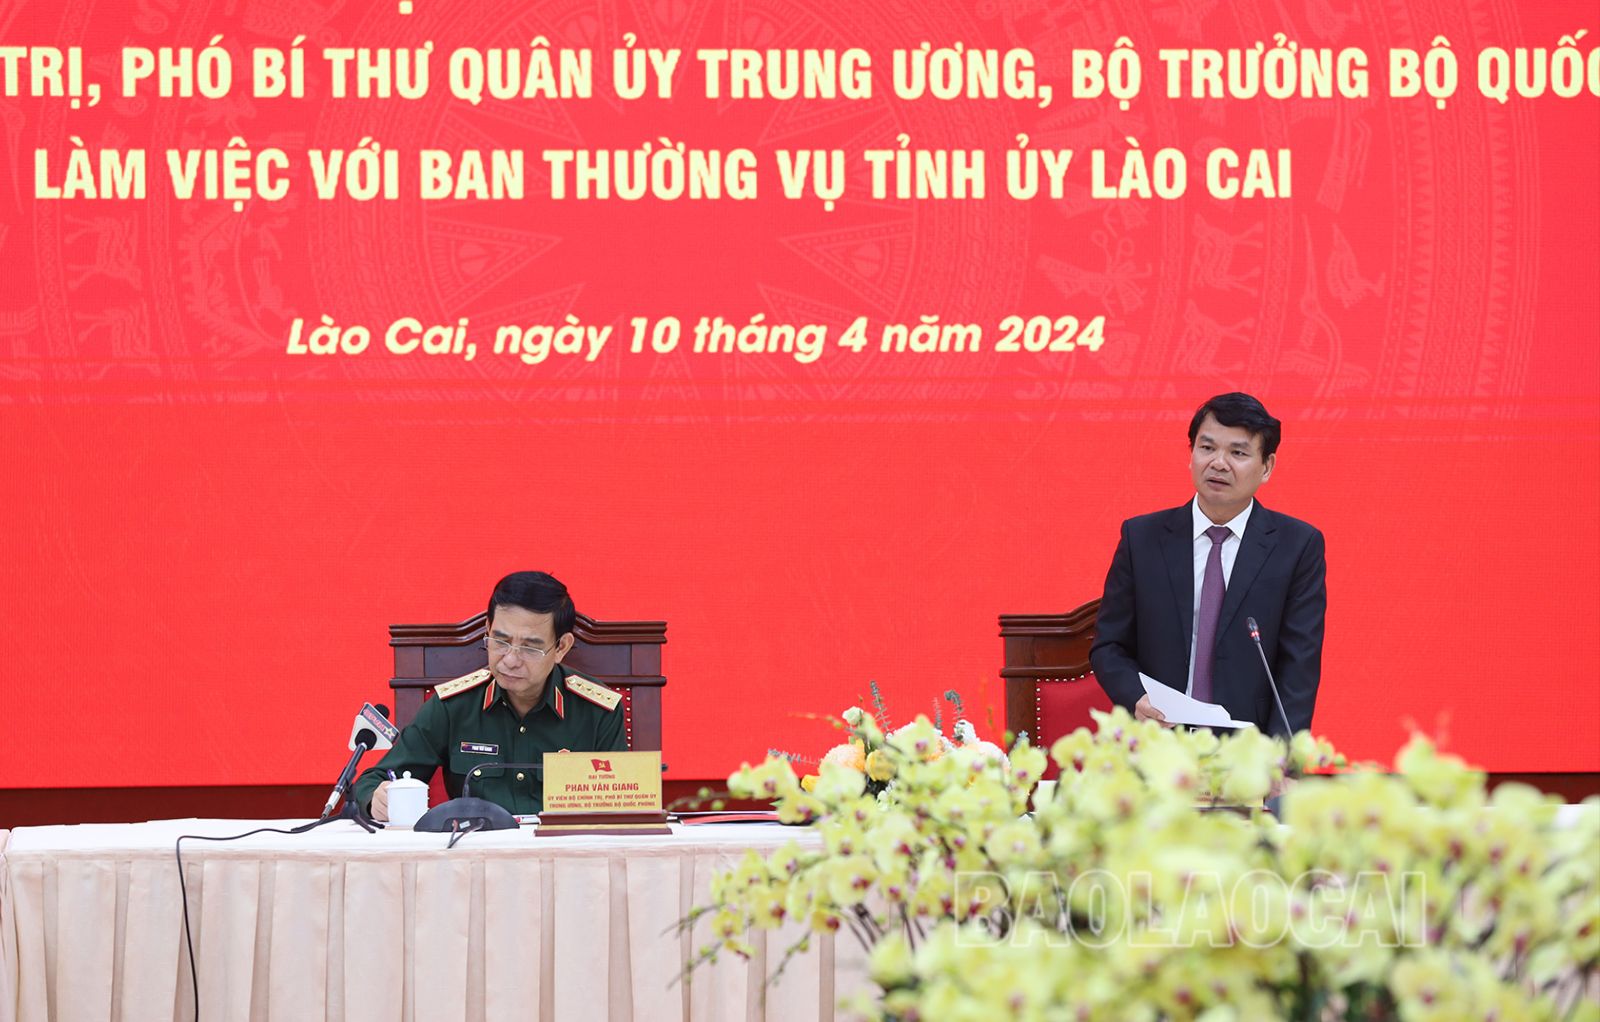 Đồng chí Đặng Xuân Phong, Bí thư Tỉnh ủy báo cáo với Đoàn Công tác tình hình phát triển kinh tế - xã hội và một số định hướng lớn của tỉnh Lào Cai..JPG